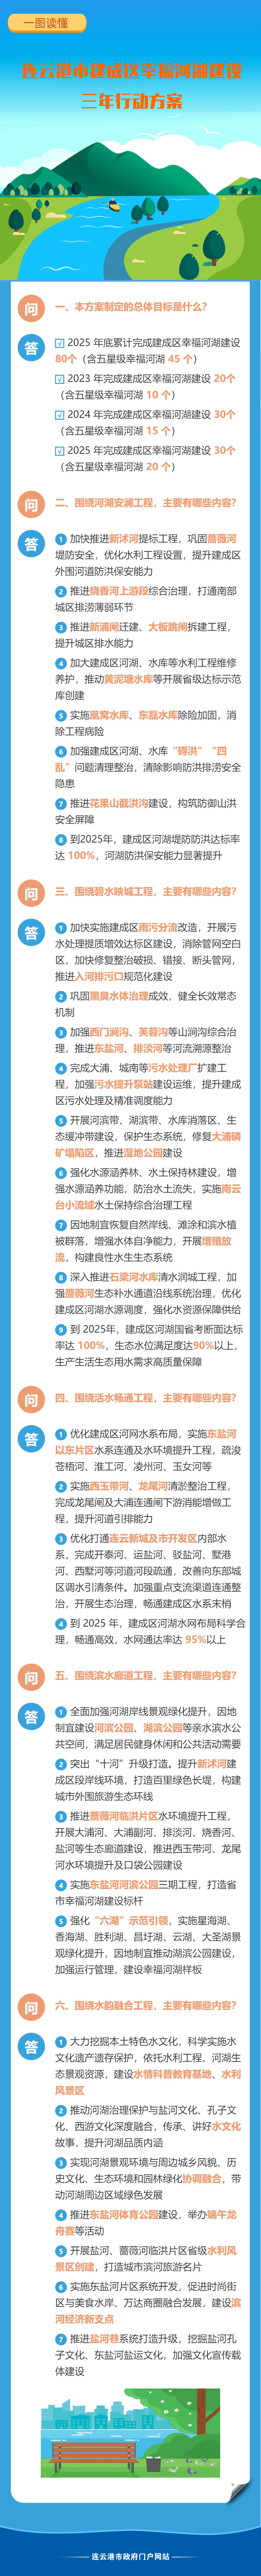 一图读懂《连云港市建成区幸福河湖建设三年行动方案》.jpg